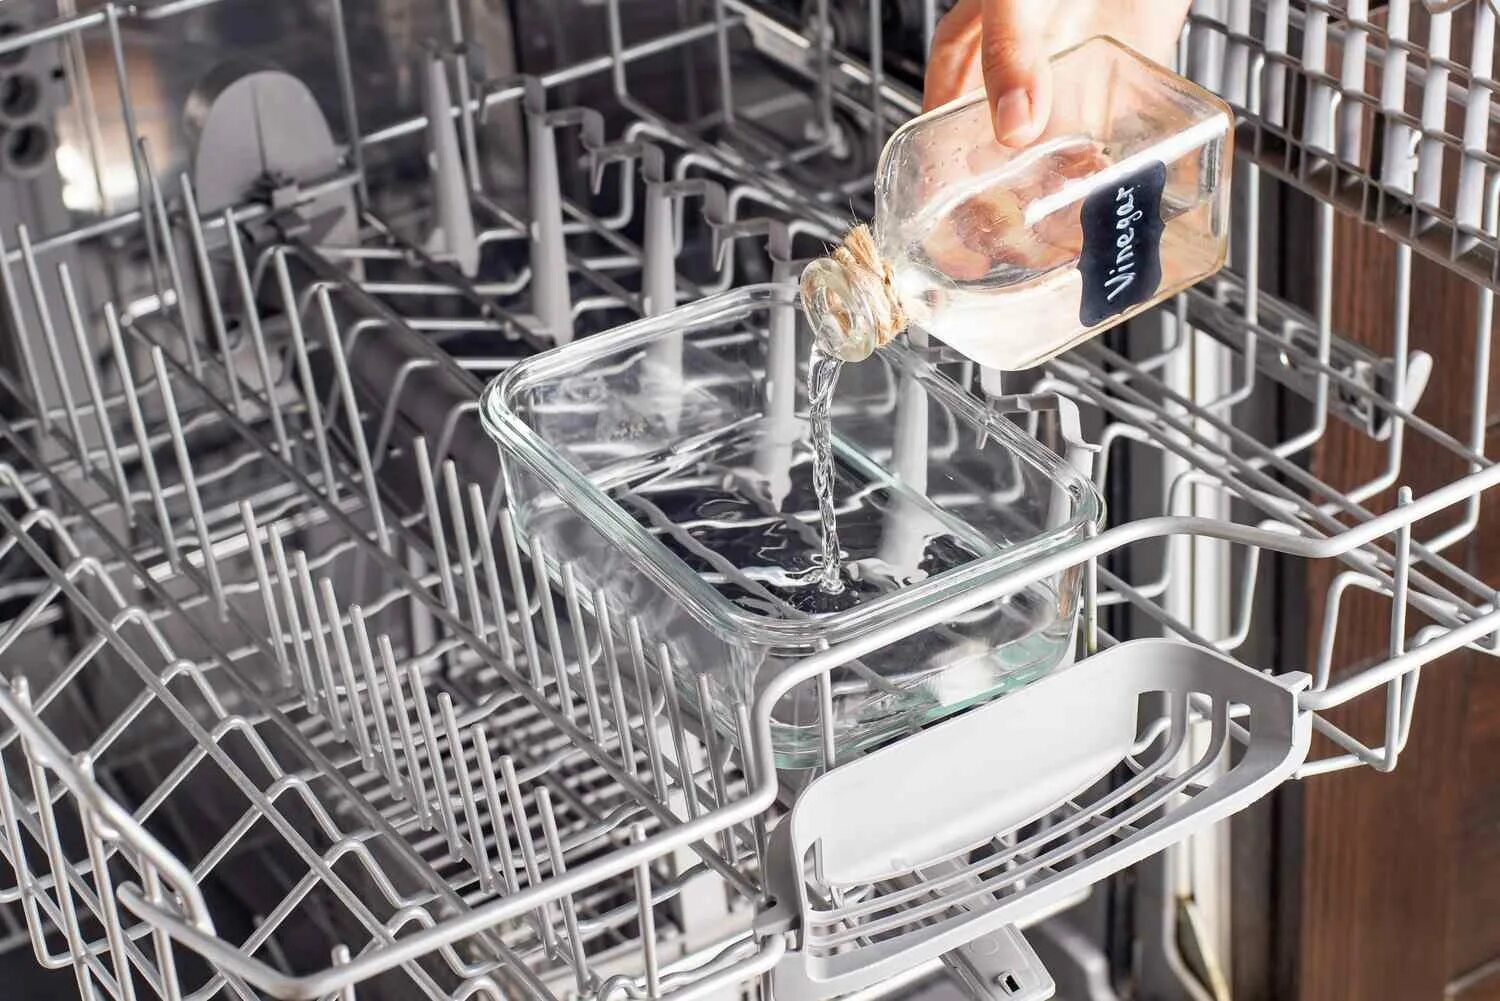 Кастрюля можно мыть в посудомоечной машине. Фильтр для посудомоечной машины. Чистка посудомоечной машины. Помыть посудомоечную машину. Посуда в посудомойке.